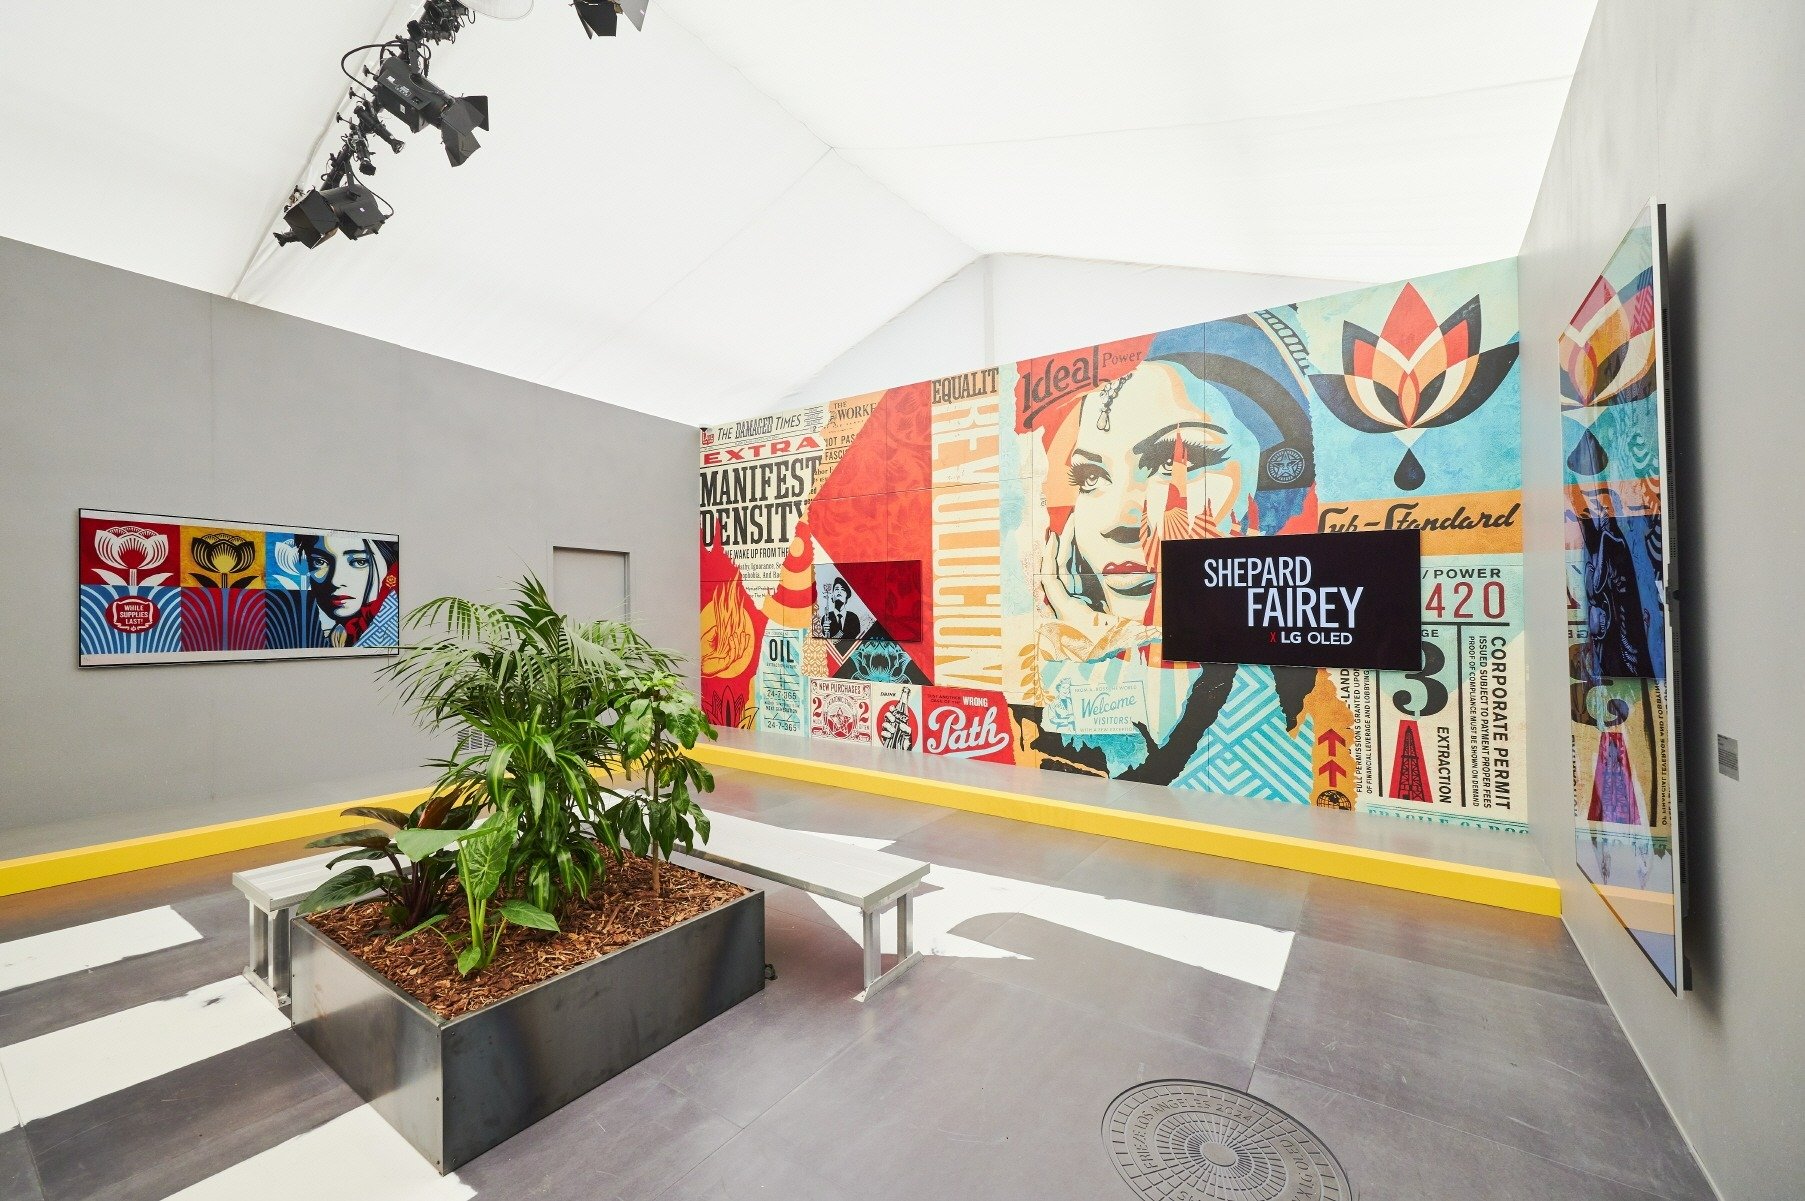 LG OLED i Shepard Fairey przenoszą sztukę uliczną do świata cyfrowego